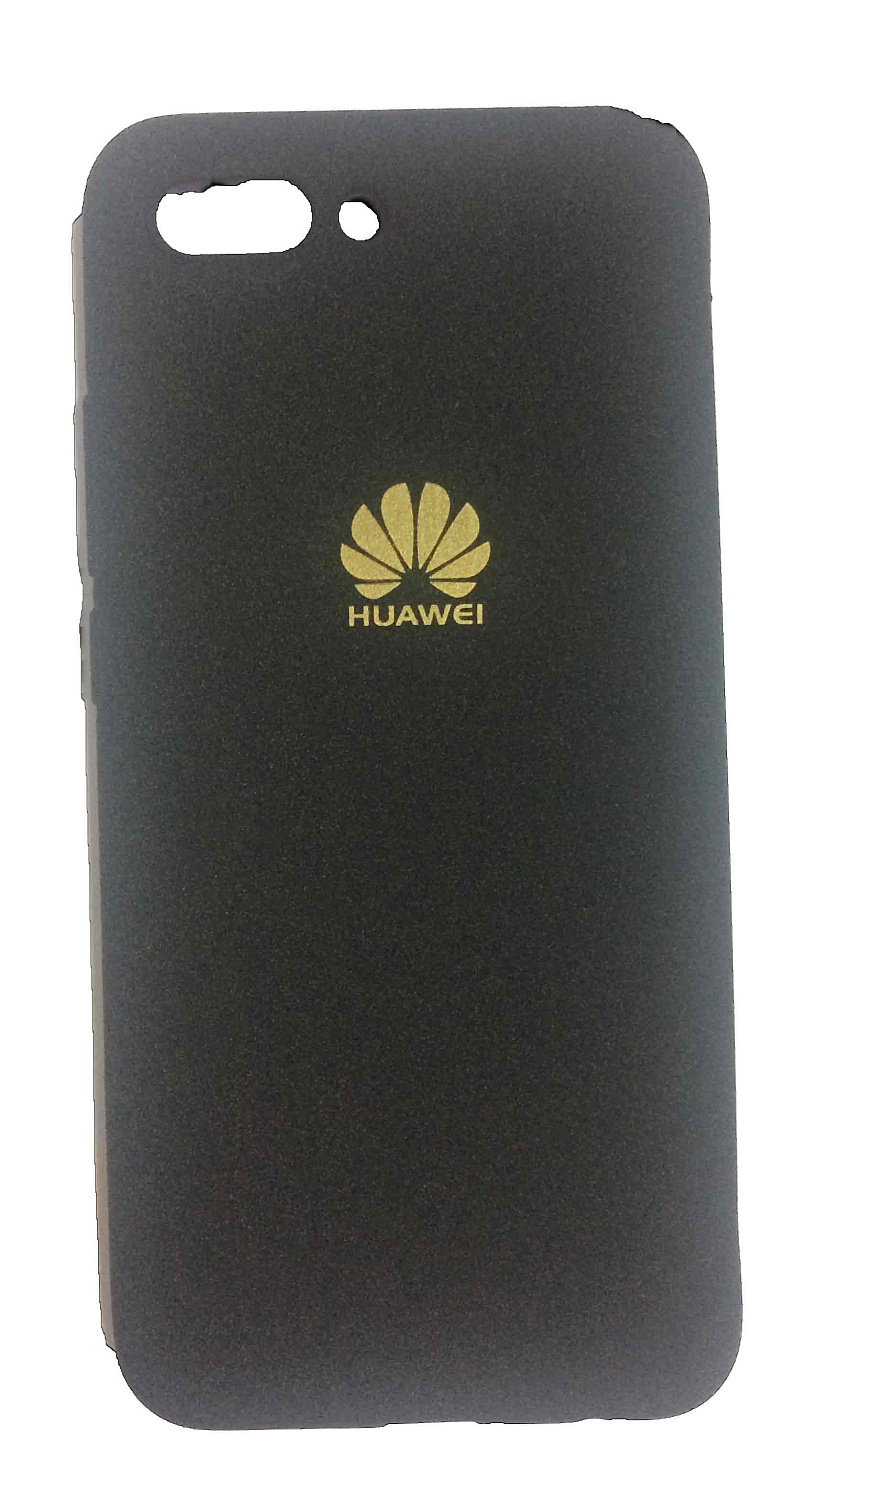 Чехол Huawei Honor P10 бампер силиконовый бархатный бархатный силикон